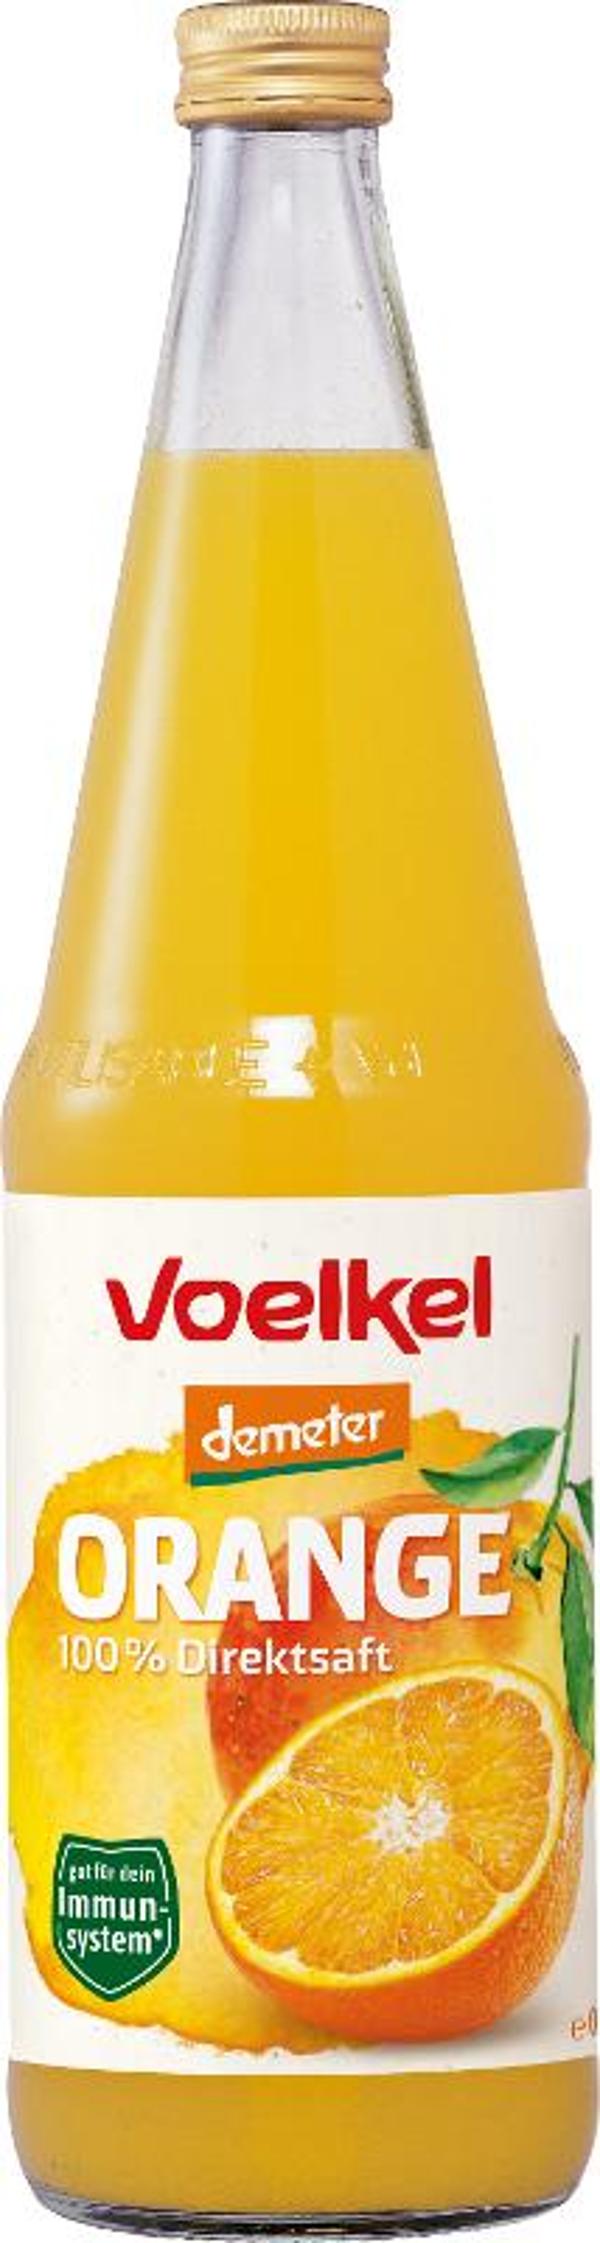 Produktfoto zu 6er Kasten Orangensaft von Voelkel